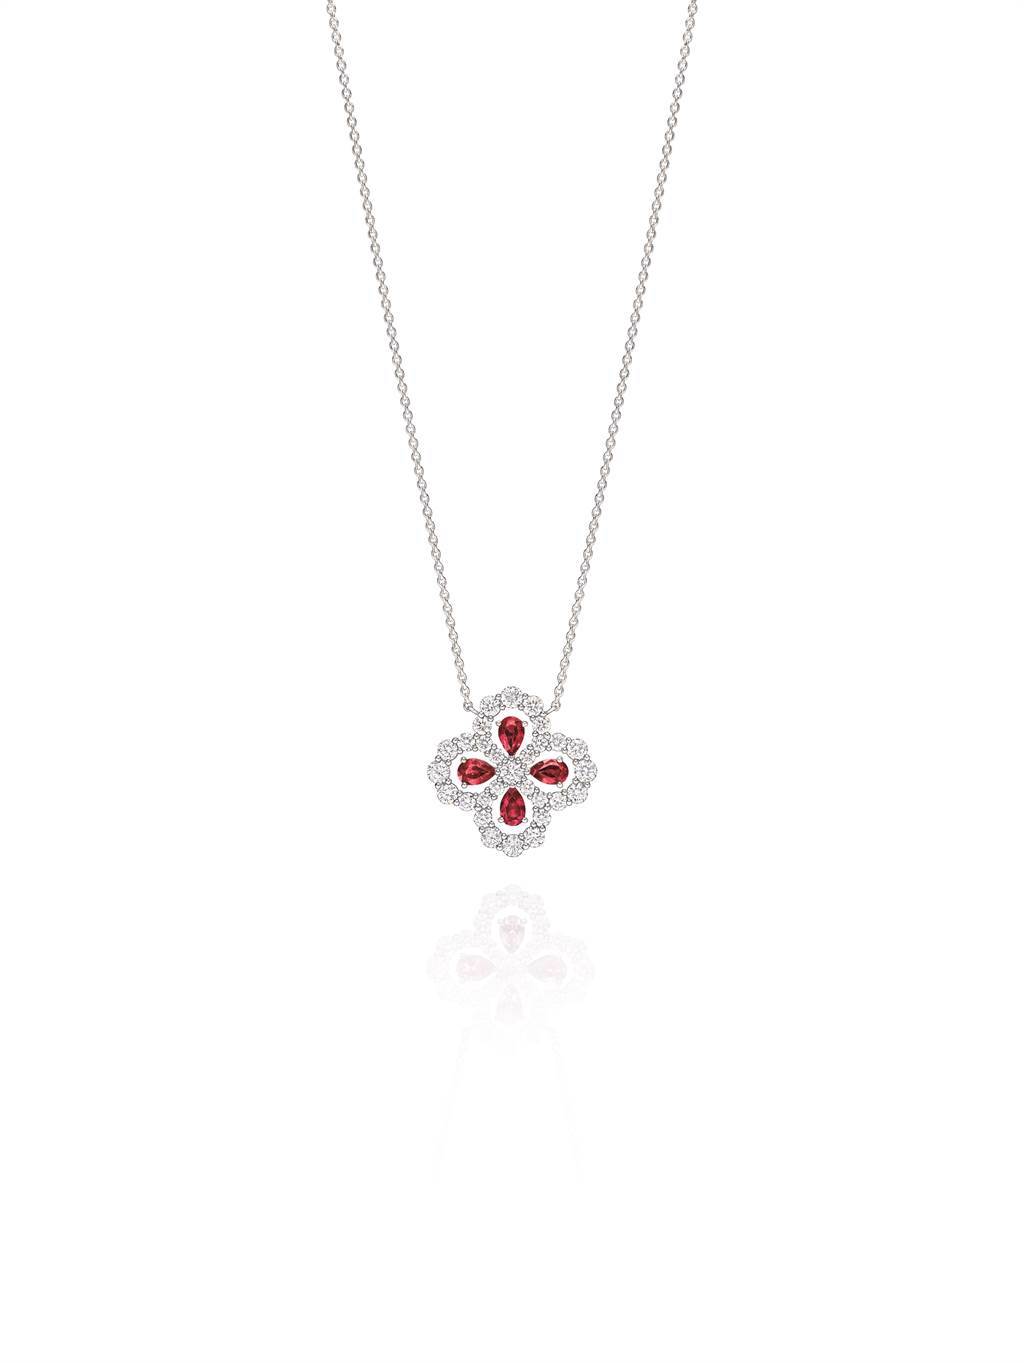 海瑞溫斯頓在年節主打Diamond Loop系列珠寶，水滴型紅寶石構成花朵圖案，44萬元。（Harry Winston提供）